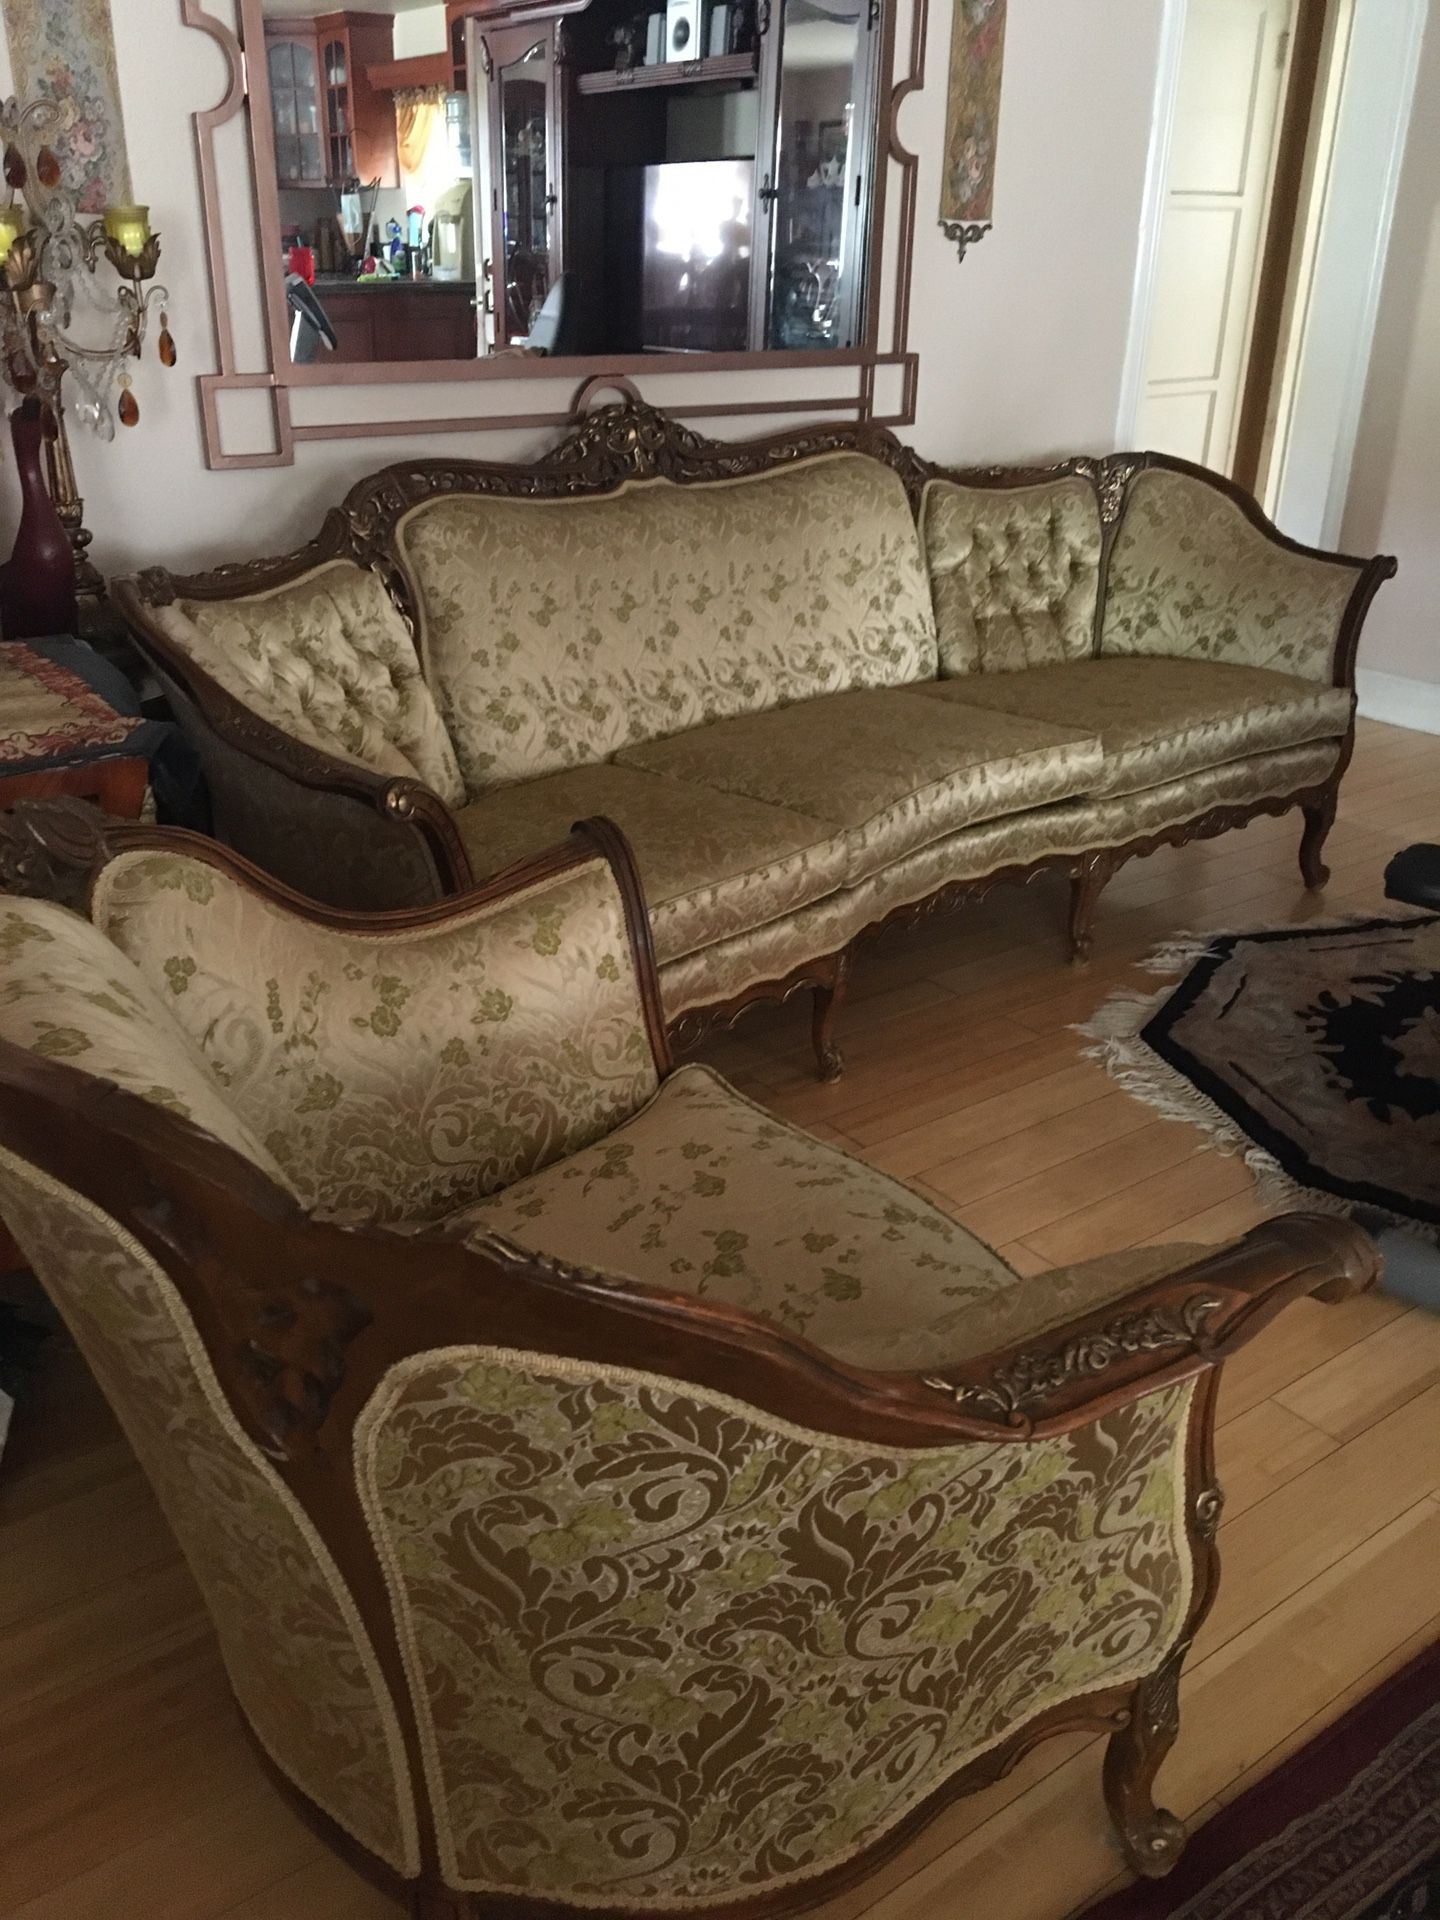 Make an Offer!!fAntique Victorian settee & chair